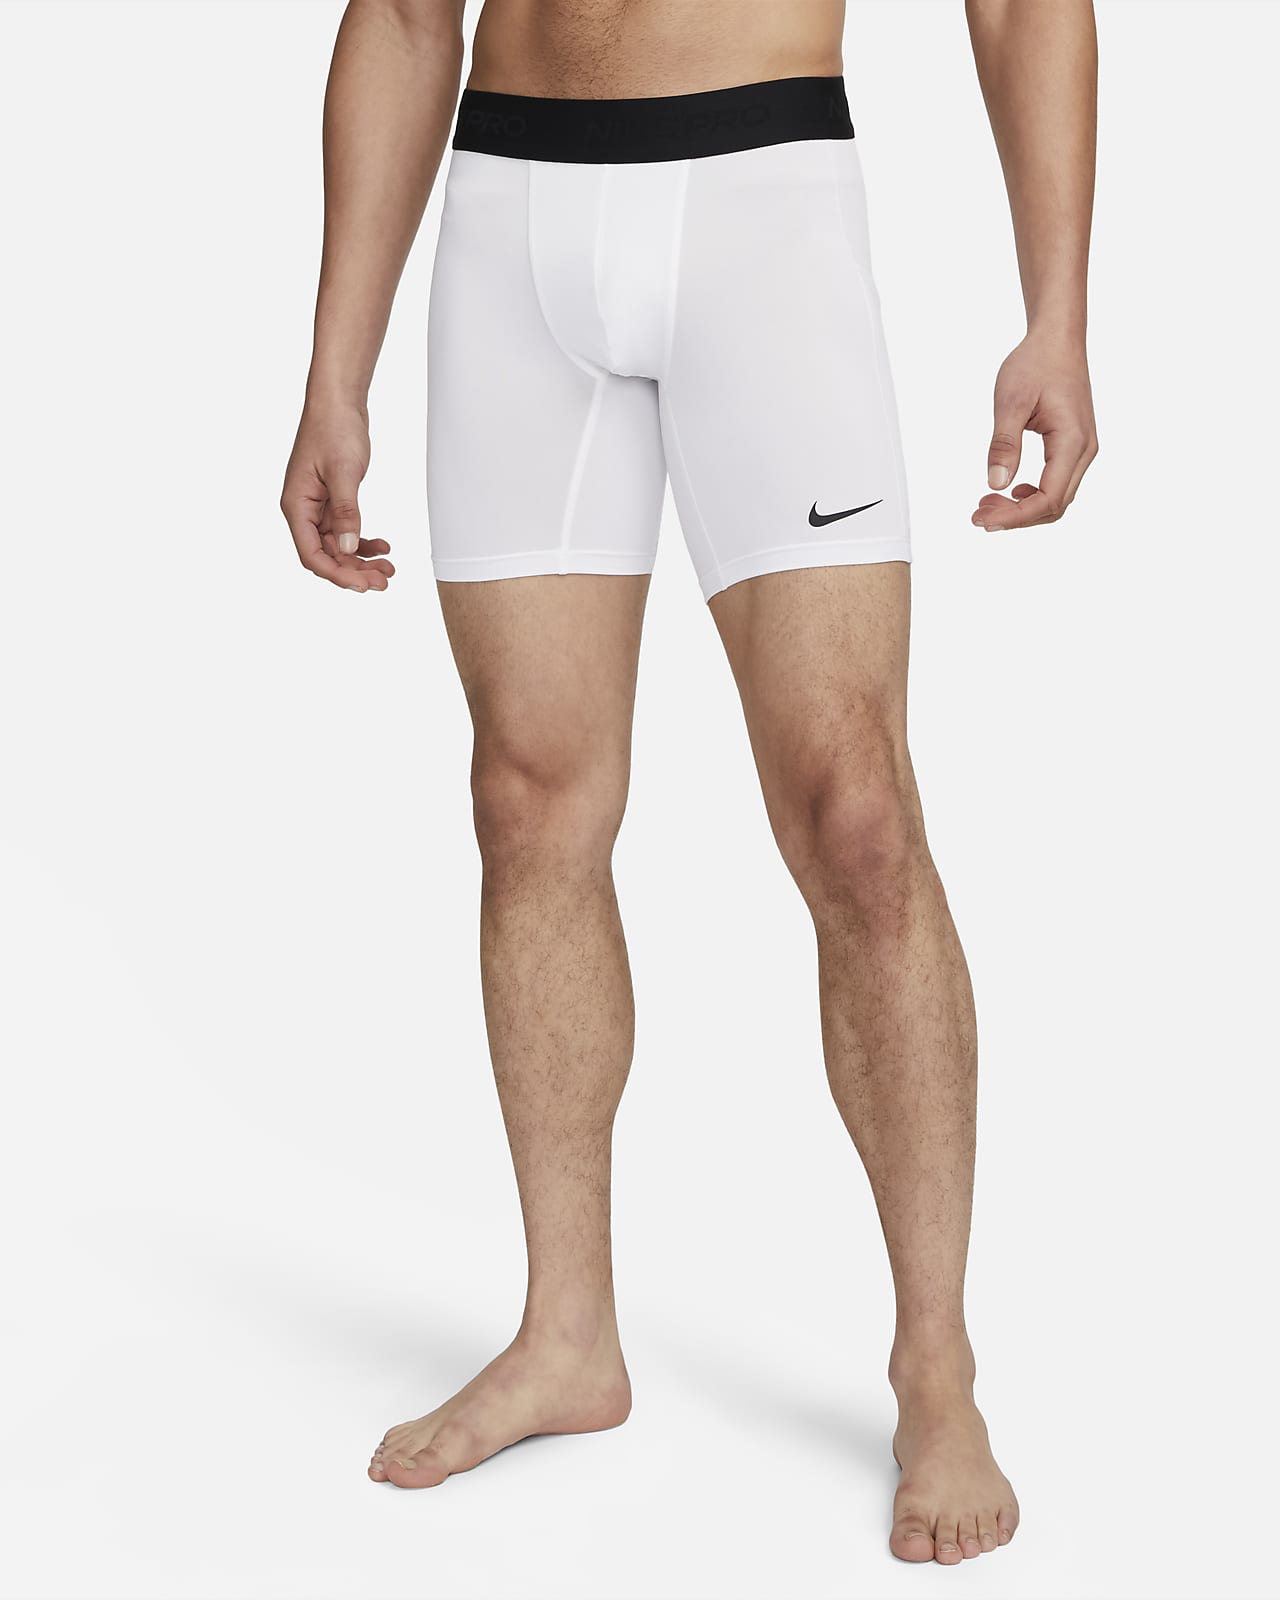 Nike Pro Men's Dri-FIT Fitness Tights. Nike LU